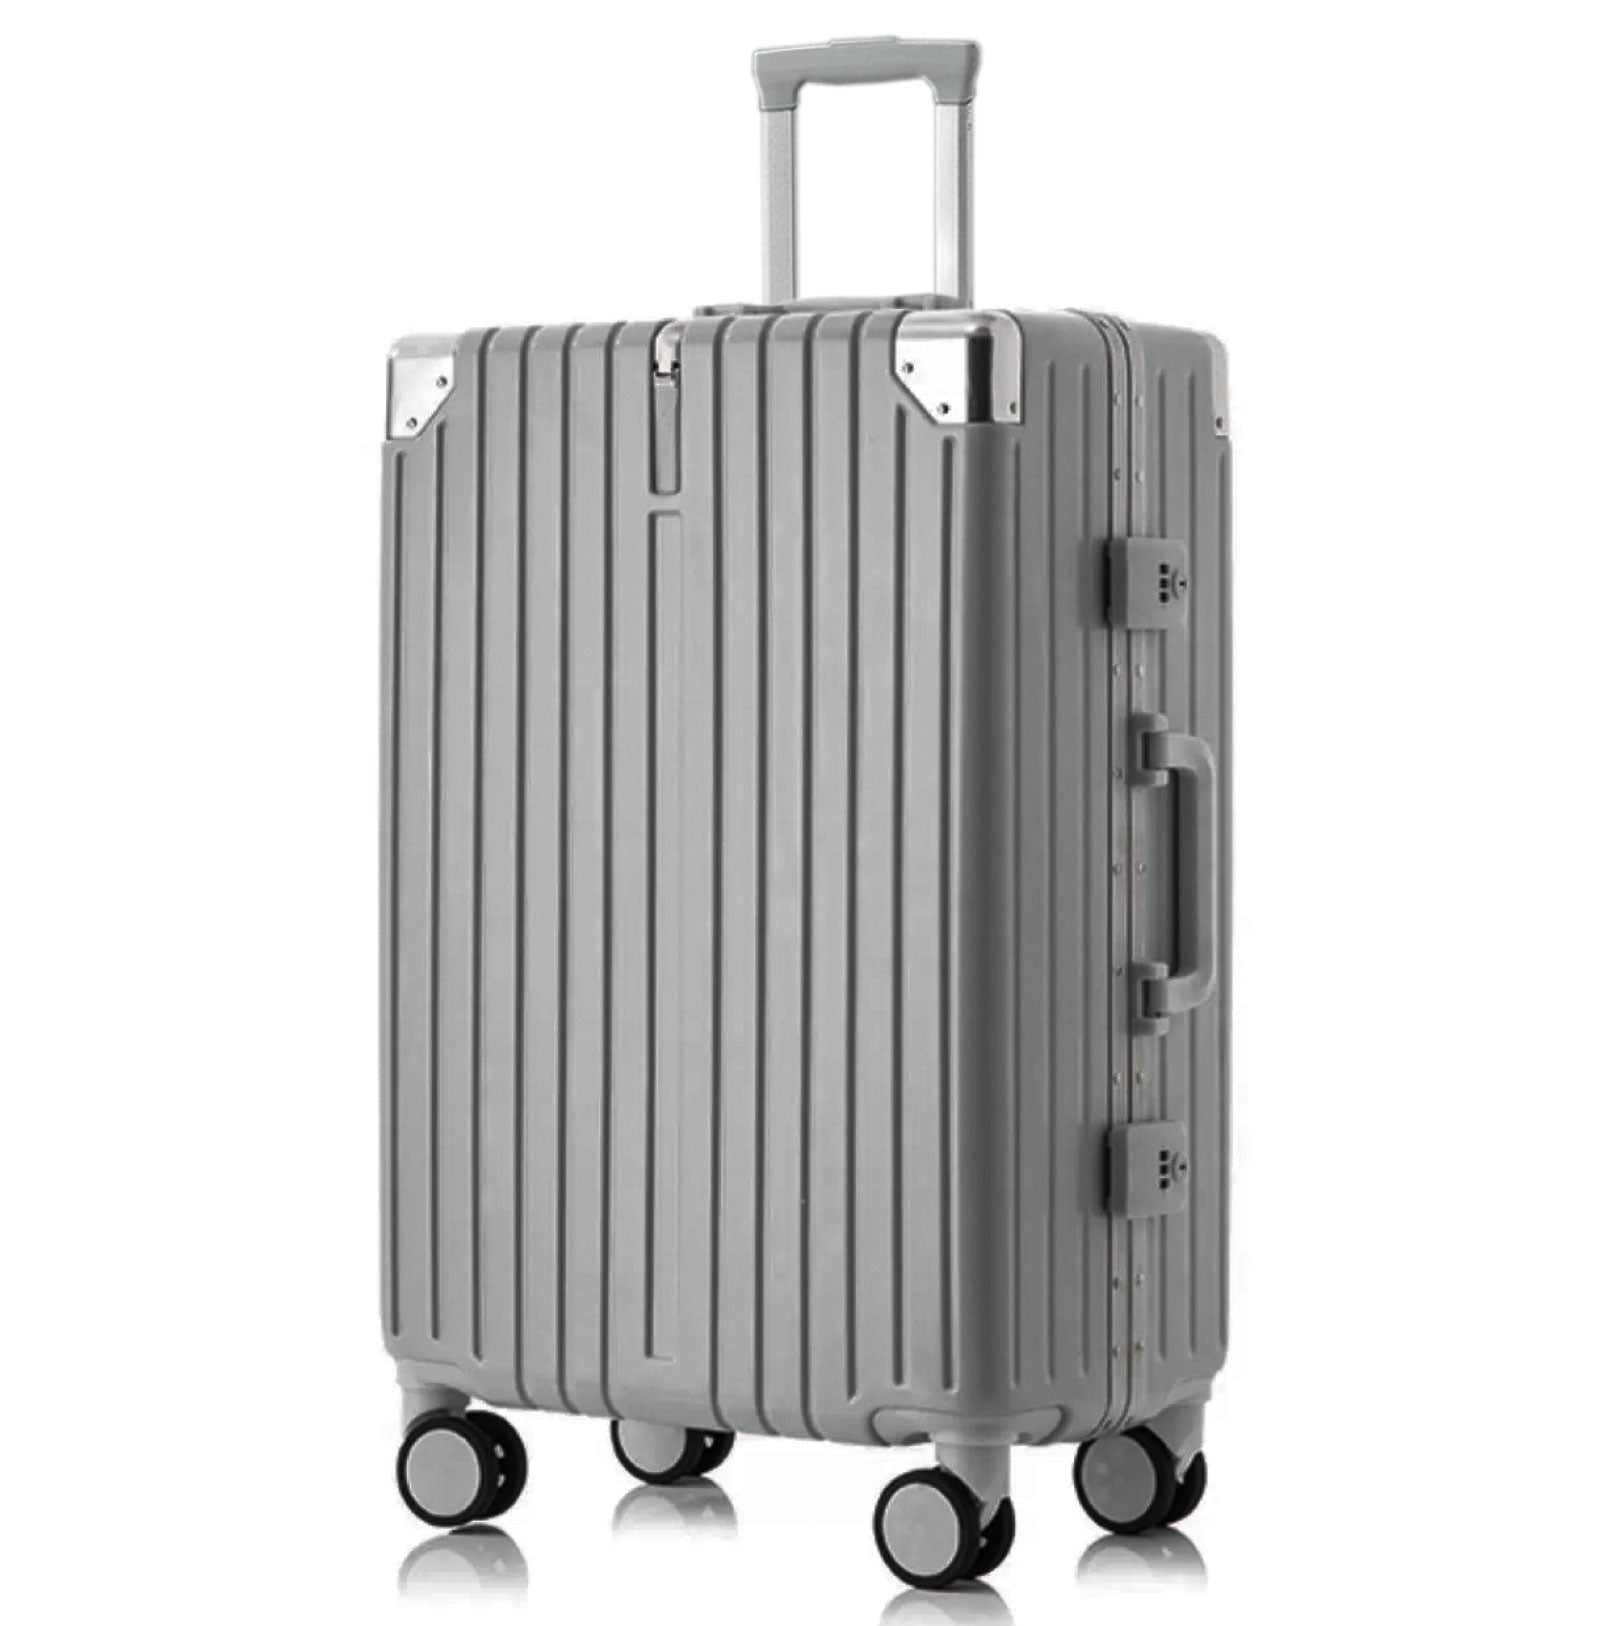 スーツケース フレームタイプ USBポート付き キャリーケース Sサイズ 38L 機内持ち込み 5カラー選ぶ 1-3日用 泊まる カップホルダー付き 軽量 大容量 多収納ポケット トランク 修学旅行 海外旅行 国内旅行 sc176-20